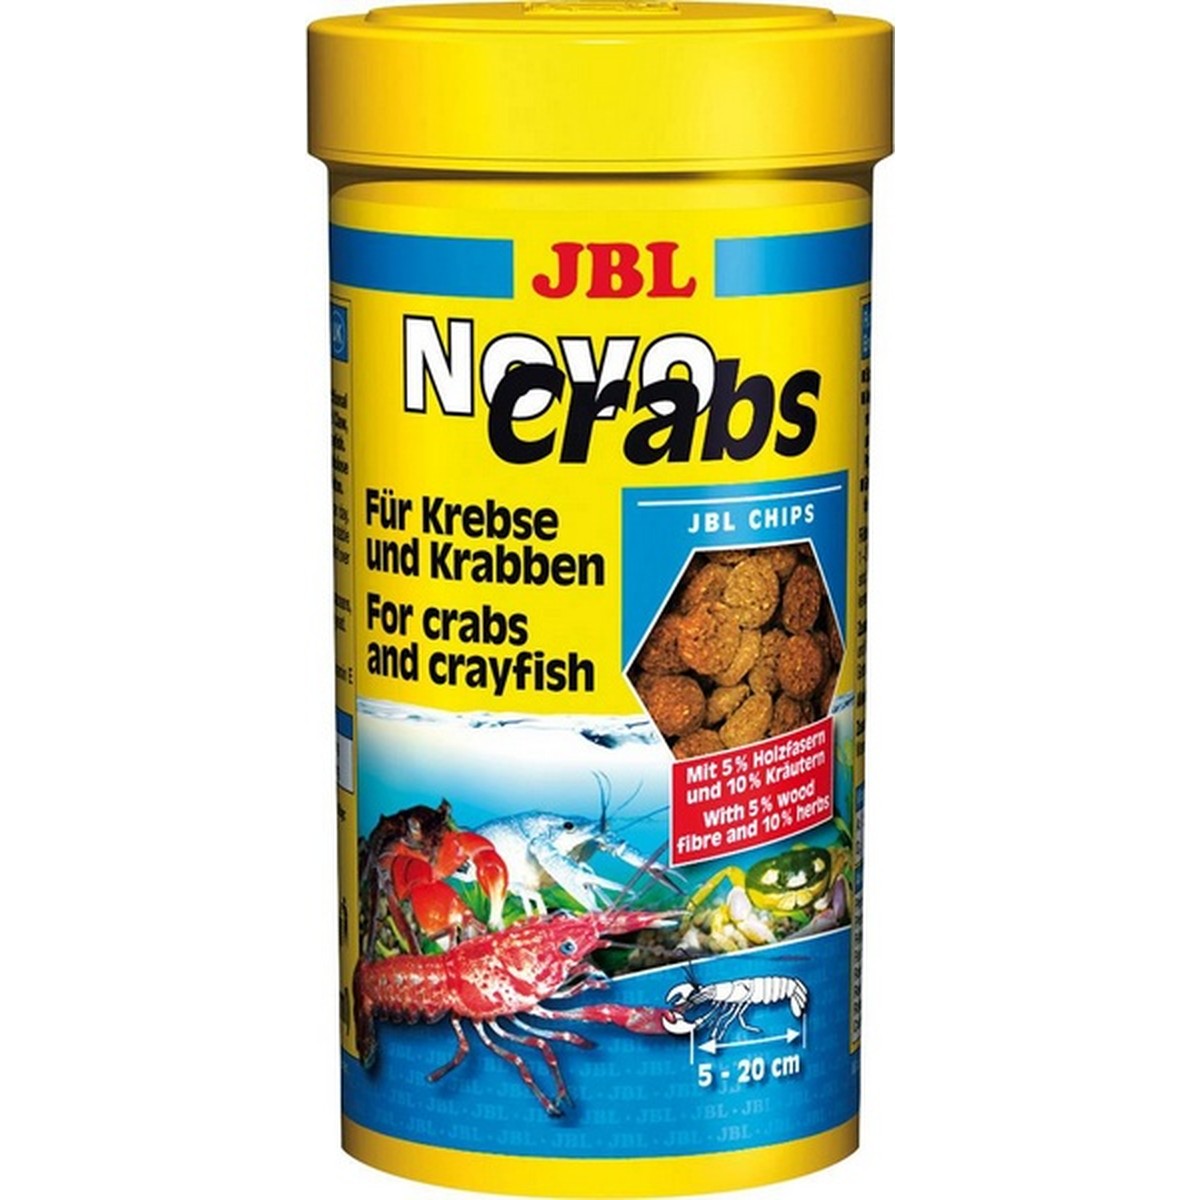   JBL NovoCrabs 100ml F/NL  100ml